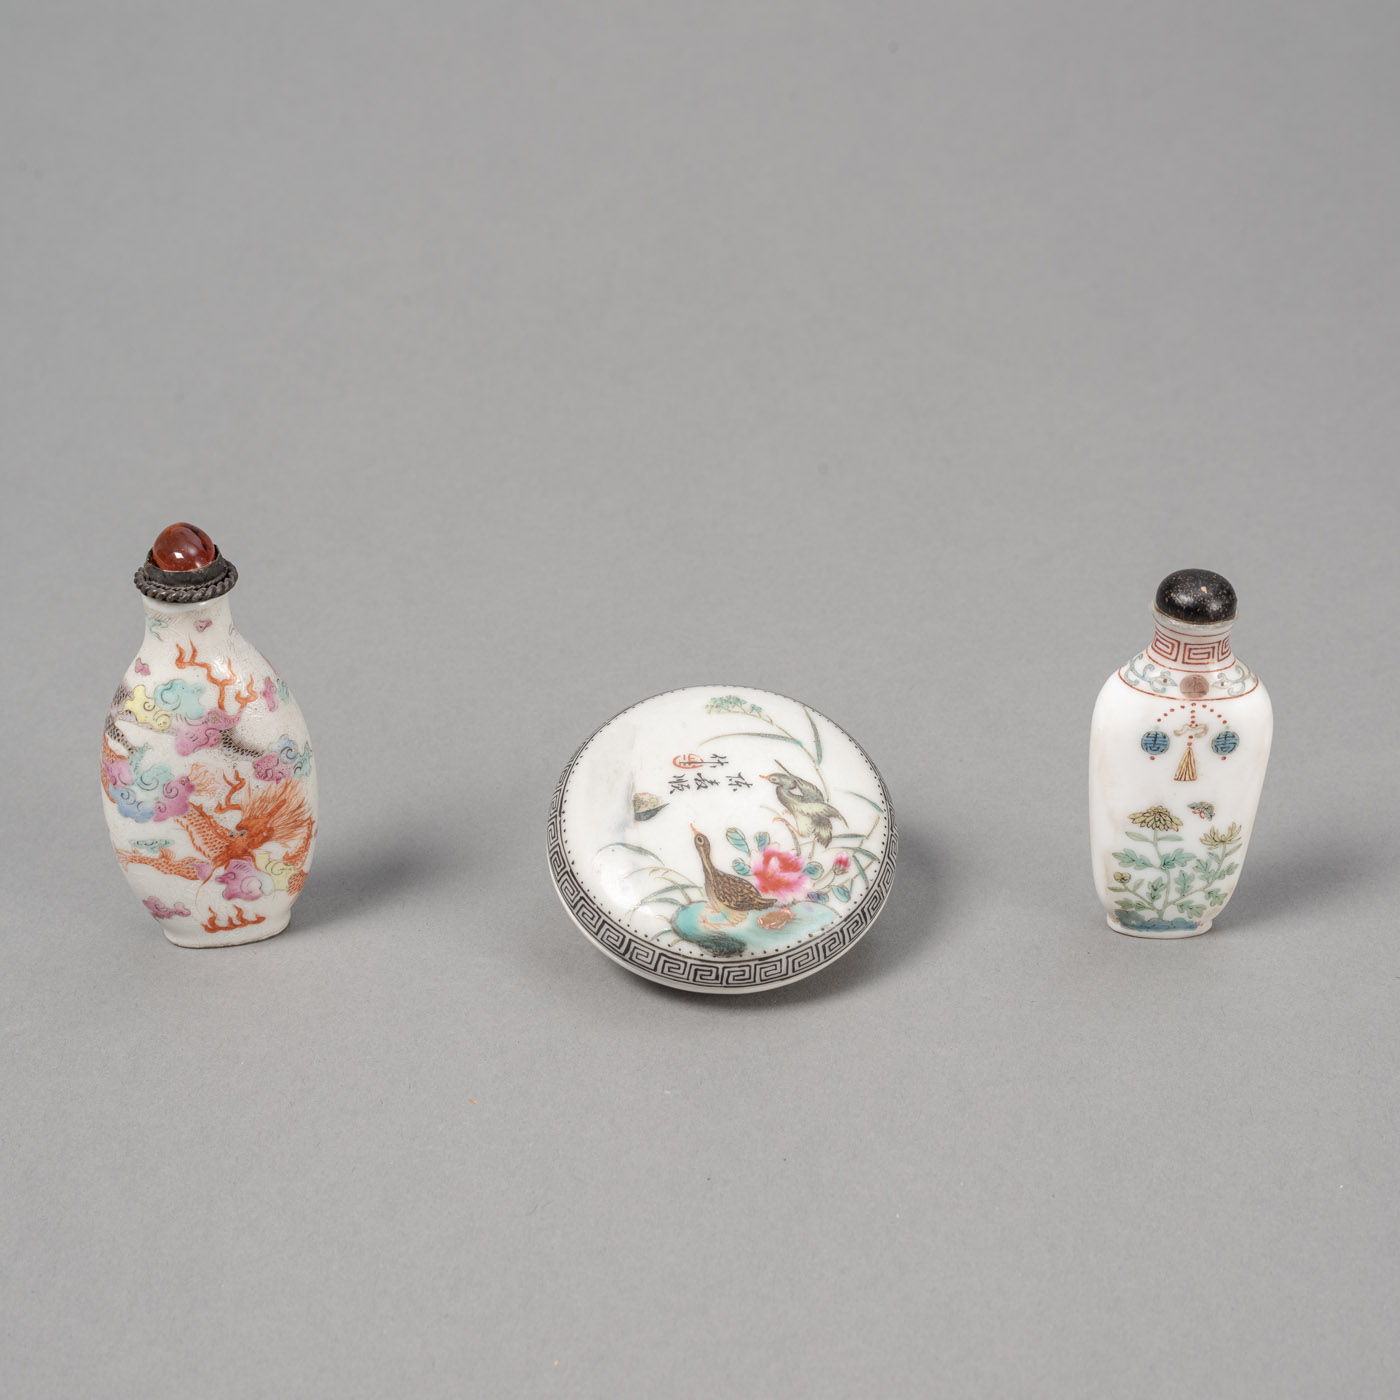 <b>Zwei fein polychrom bemalte Porzellan-Snuffbottles mit Drachen- und 'Gu Yue Xuan'-Dekor sowie eine Siegellackdose mit Entenpärchen am Ufer in zarter Emailmalerei</b>